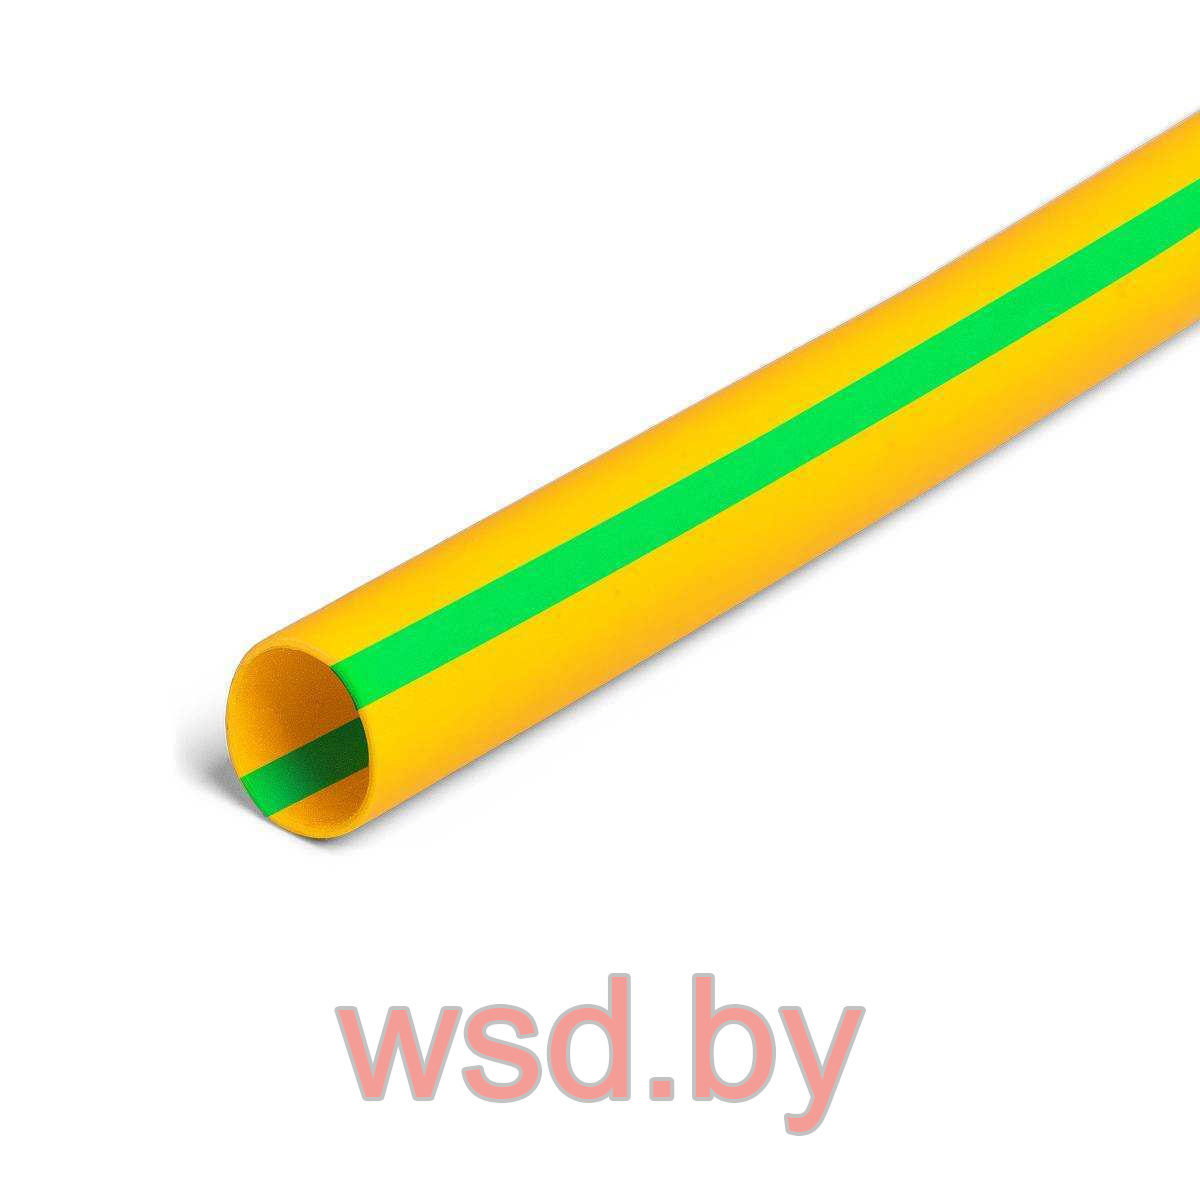 Трубка ТНТнг-LS-40/20 желто-зеленая (нарезка 1м) (КВТ)